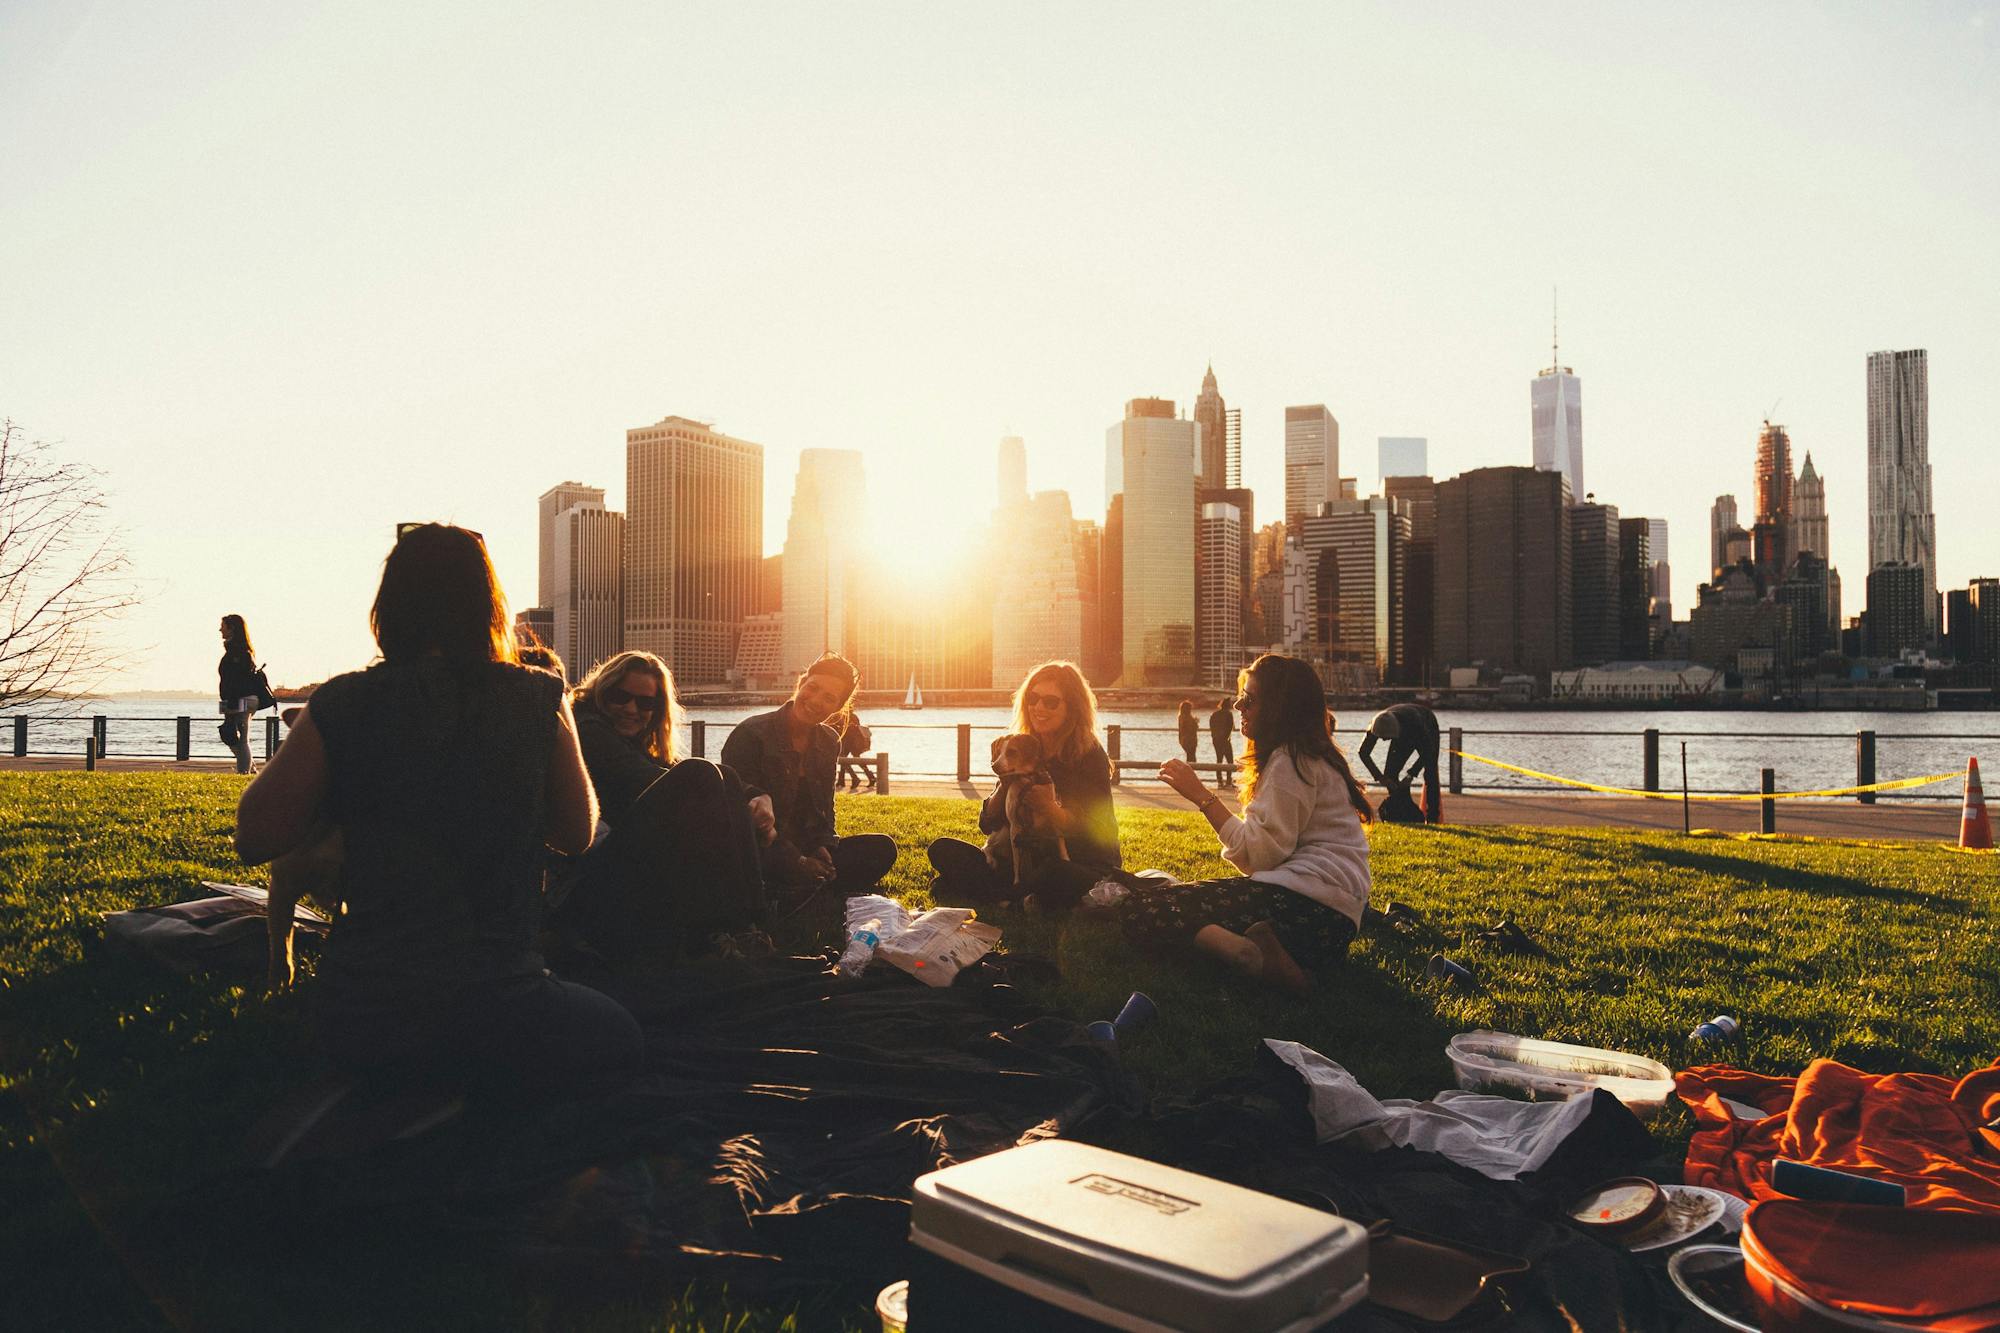 Eine Gruppe von Freunden sitzt im Brooklyn Bridge Park und macht ein Picknick. Sie lachen und unterhalten sich. Im Hintergrund sind die hohen Wolkenkratzer und die aufgehende Sonne zu sehen. 